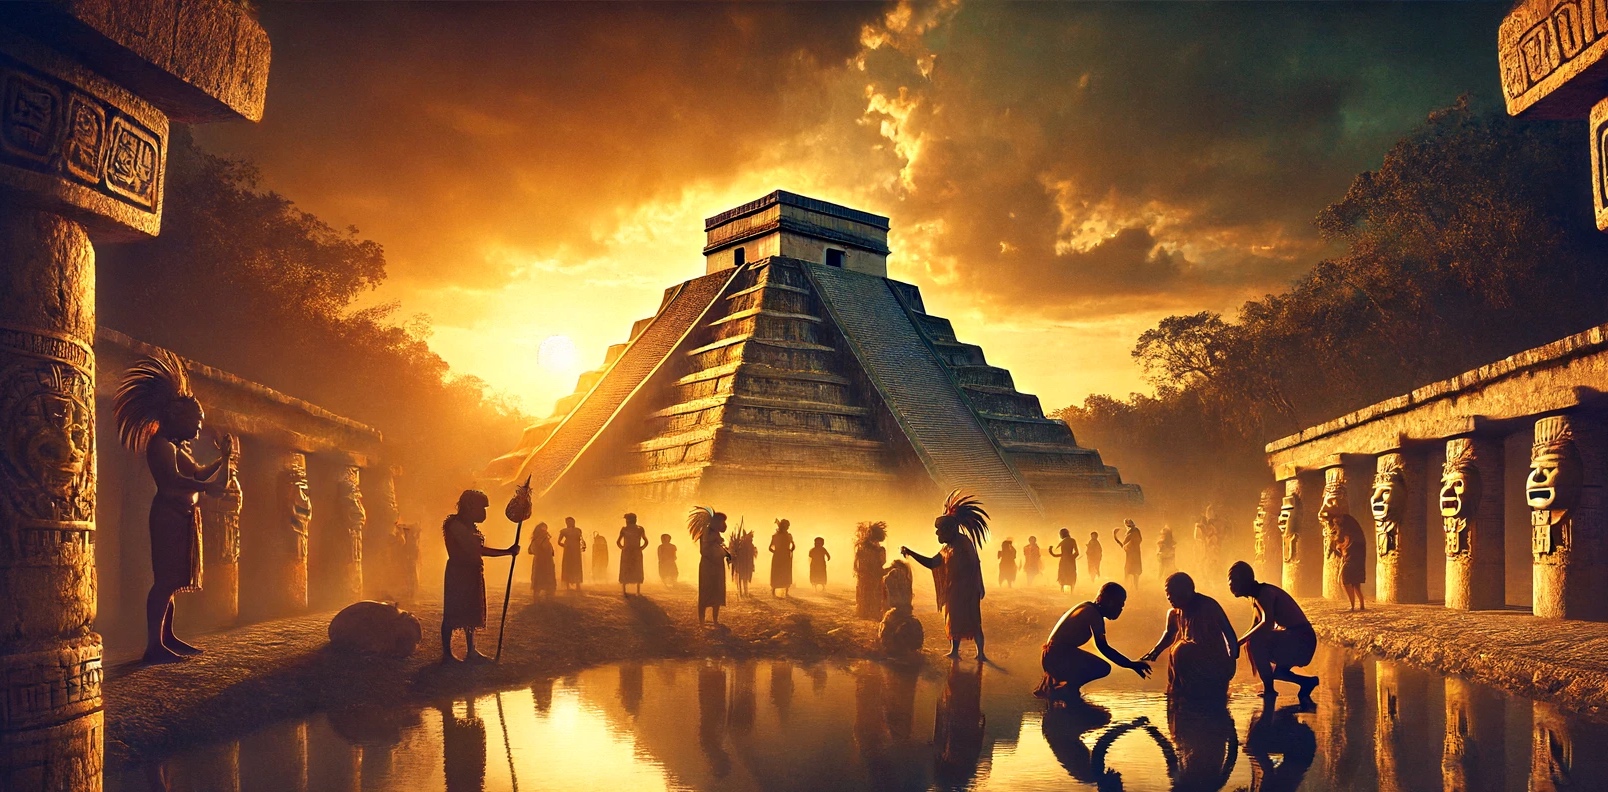 Le sacrifice faisait partie intégrante de la société Maya. © XD, Futura avec Dall-e